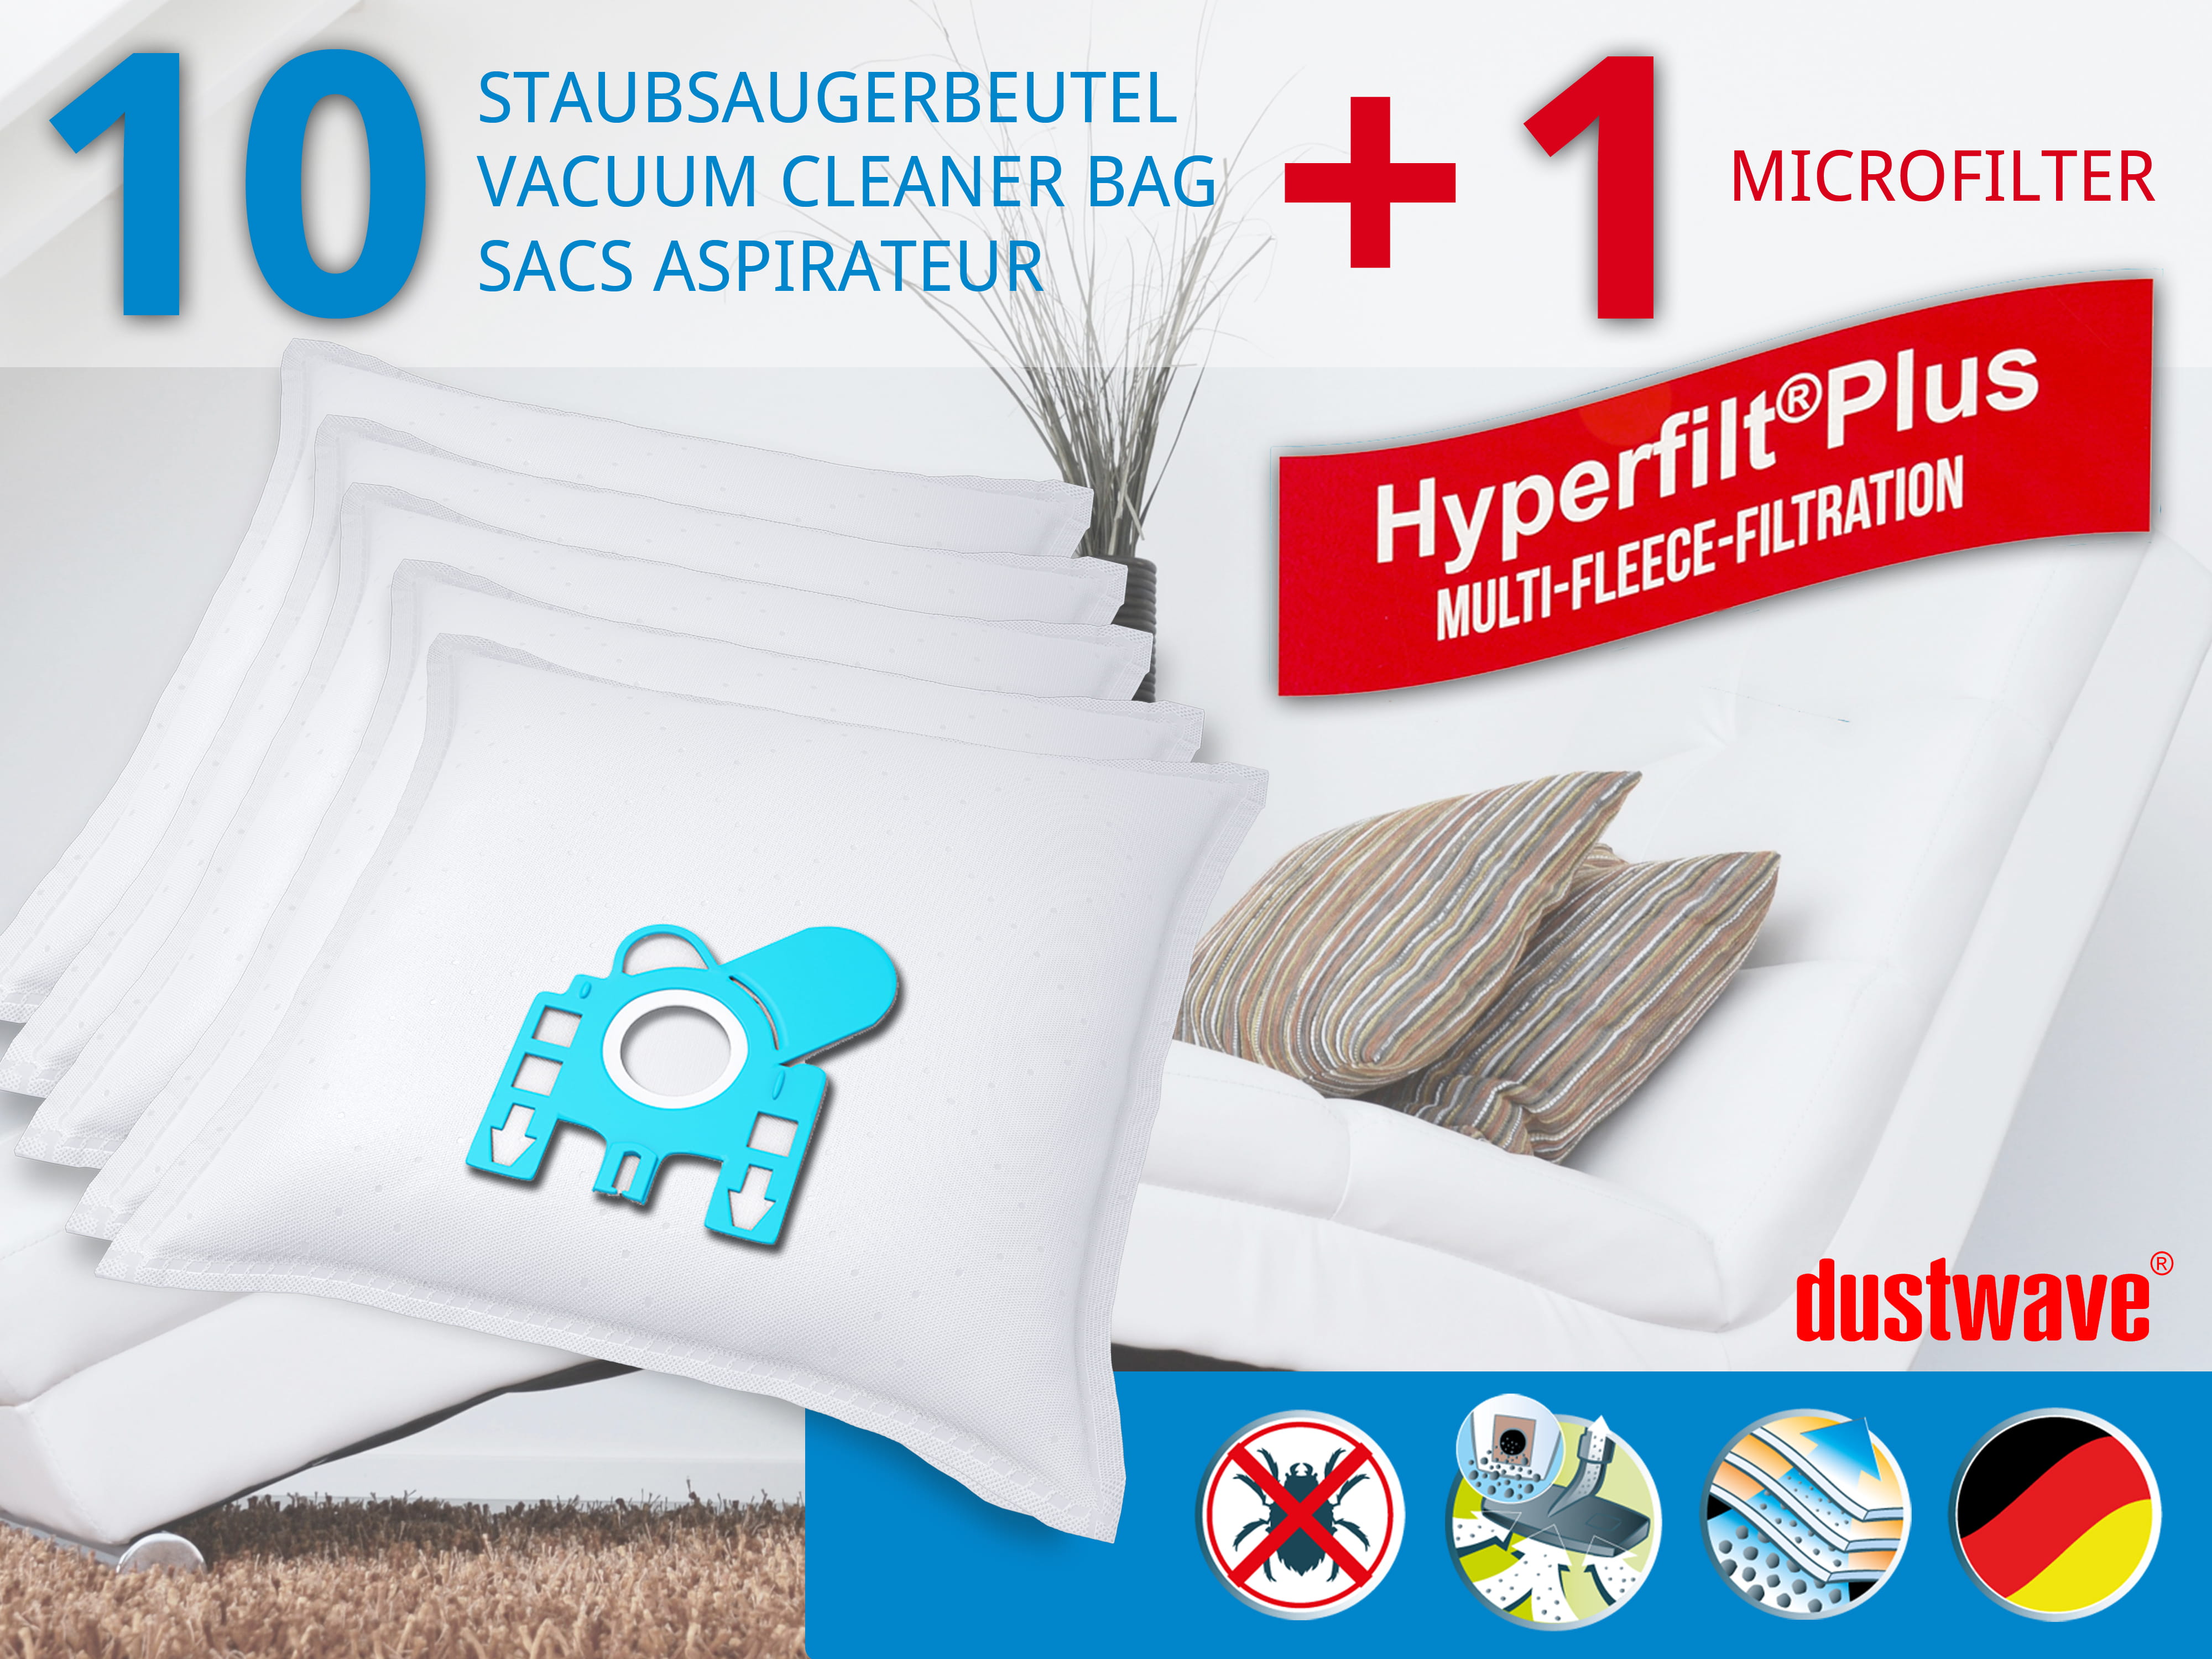 Dustwave® 10 Staubsaugerbeutel für Hoover PU2120 001 - hocheffizient, mehrlagiges Mikrovlies mit Hygieneverschluss - Made in Germany